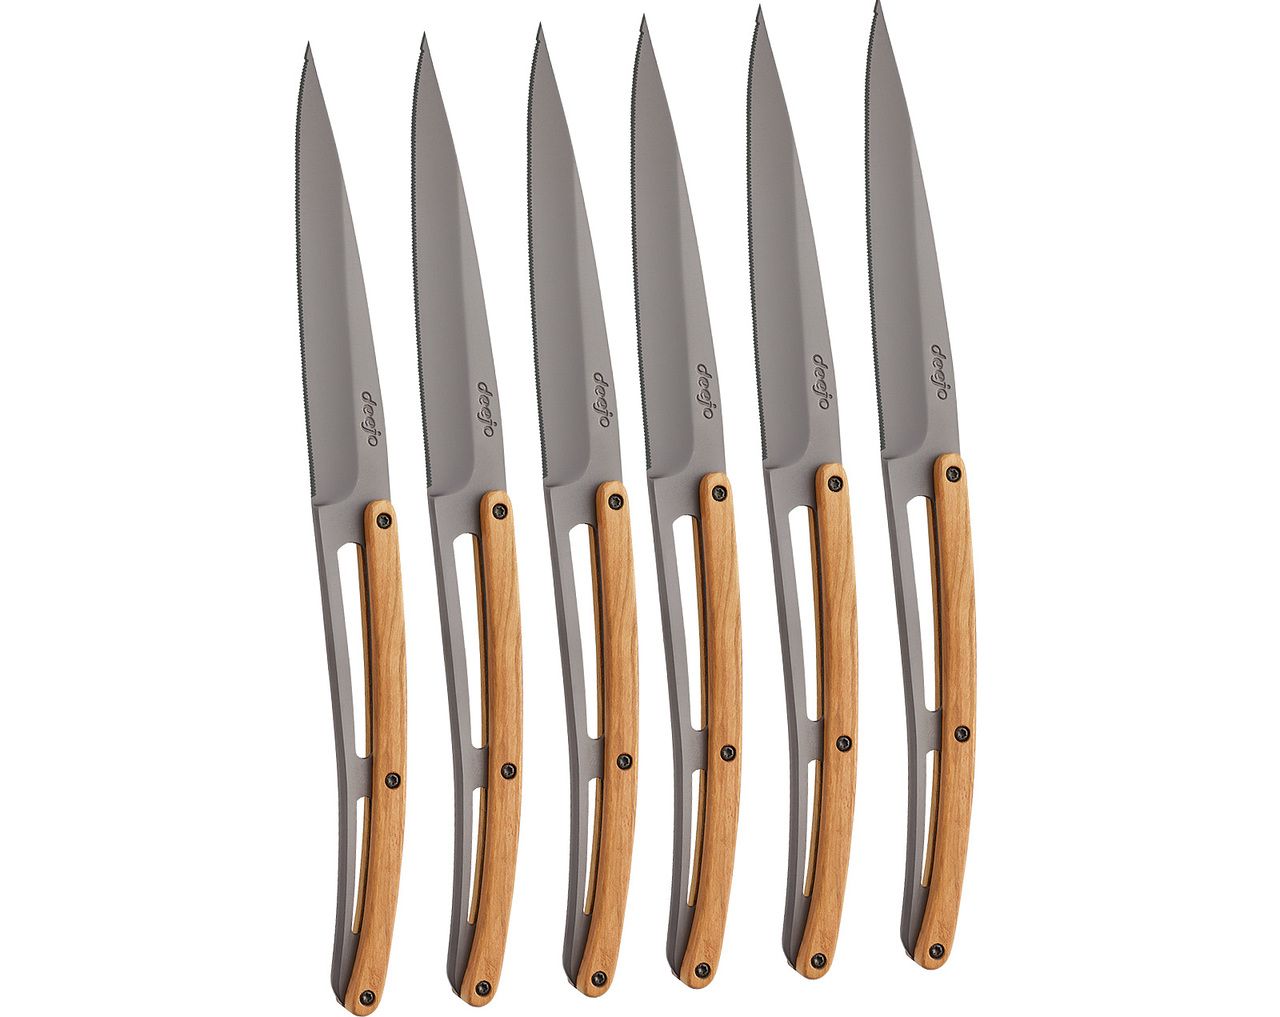 https://thepotlok.com/sys/uploads/2022/08/18276_1280-6-deejo-steak-knives-serrated-olive-wood.jpg